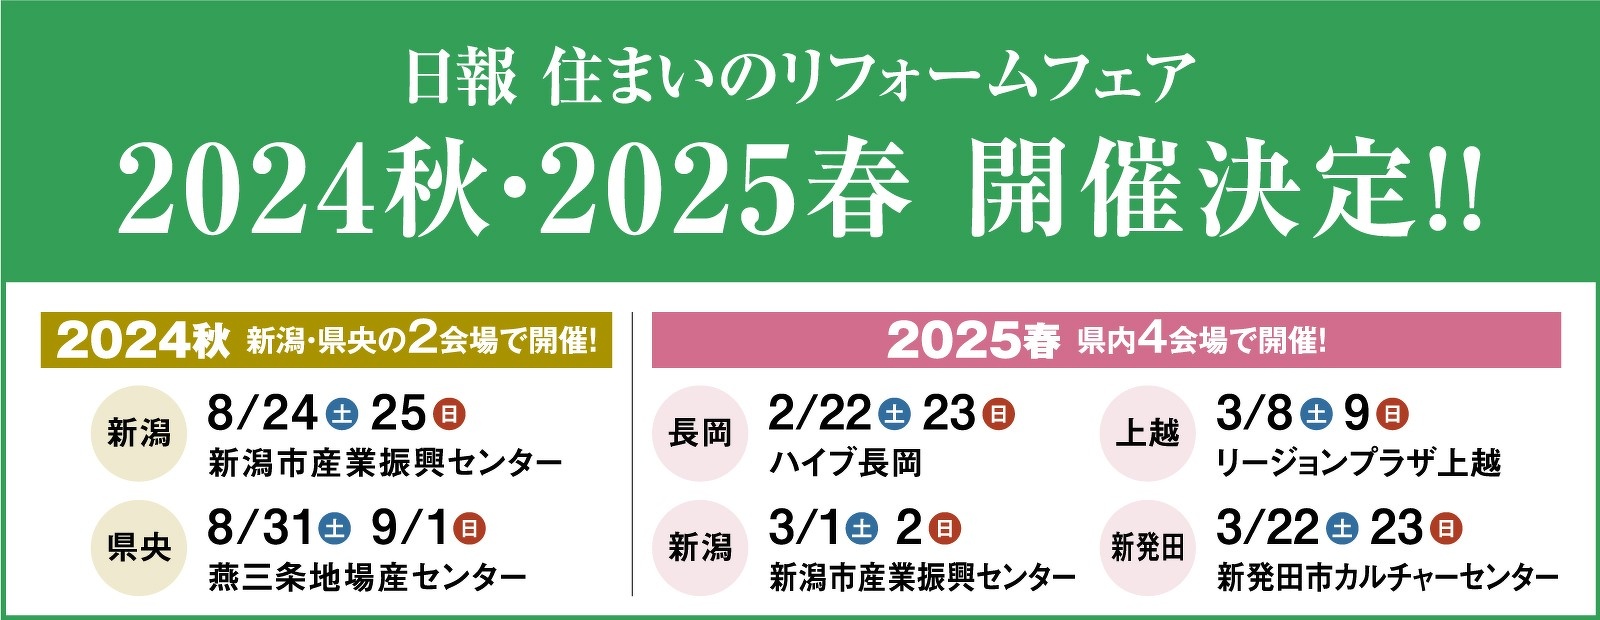 日報住まいのリフォームフェア2024秋・2025春開催決定!!